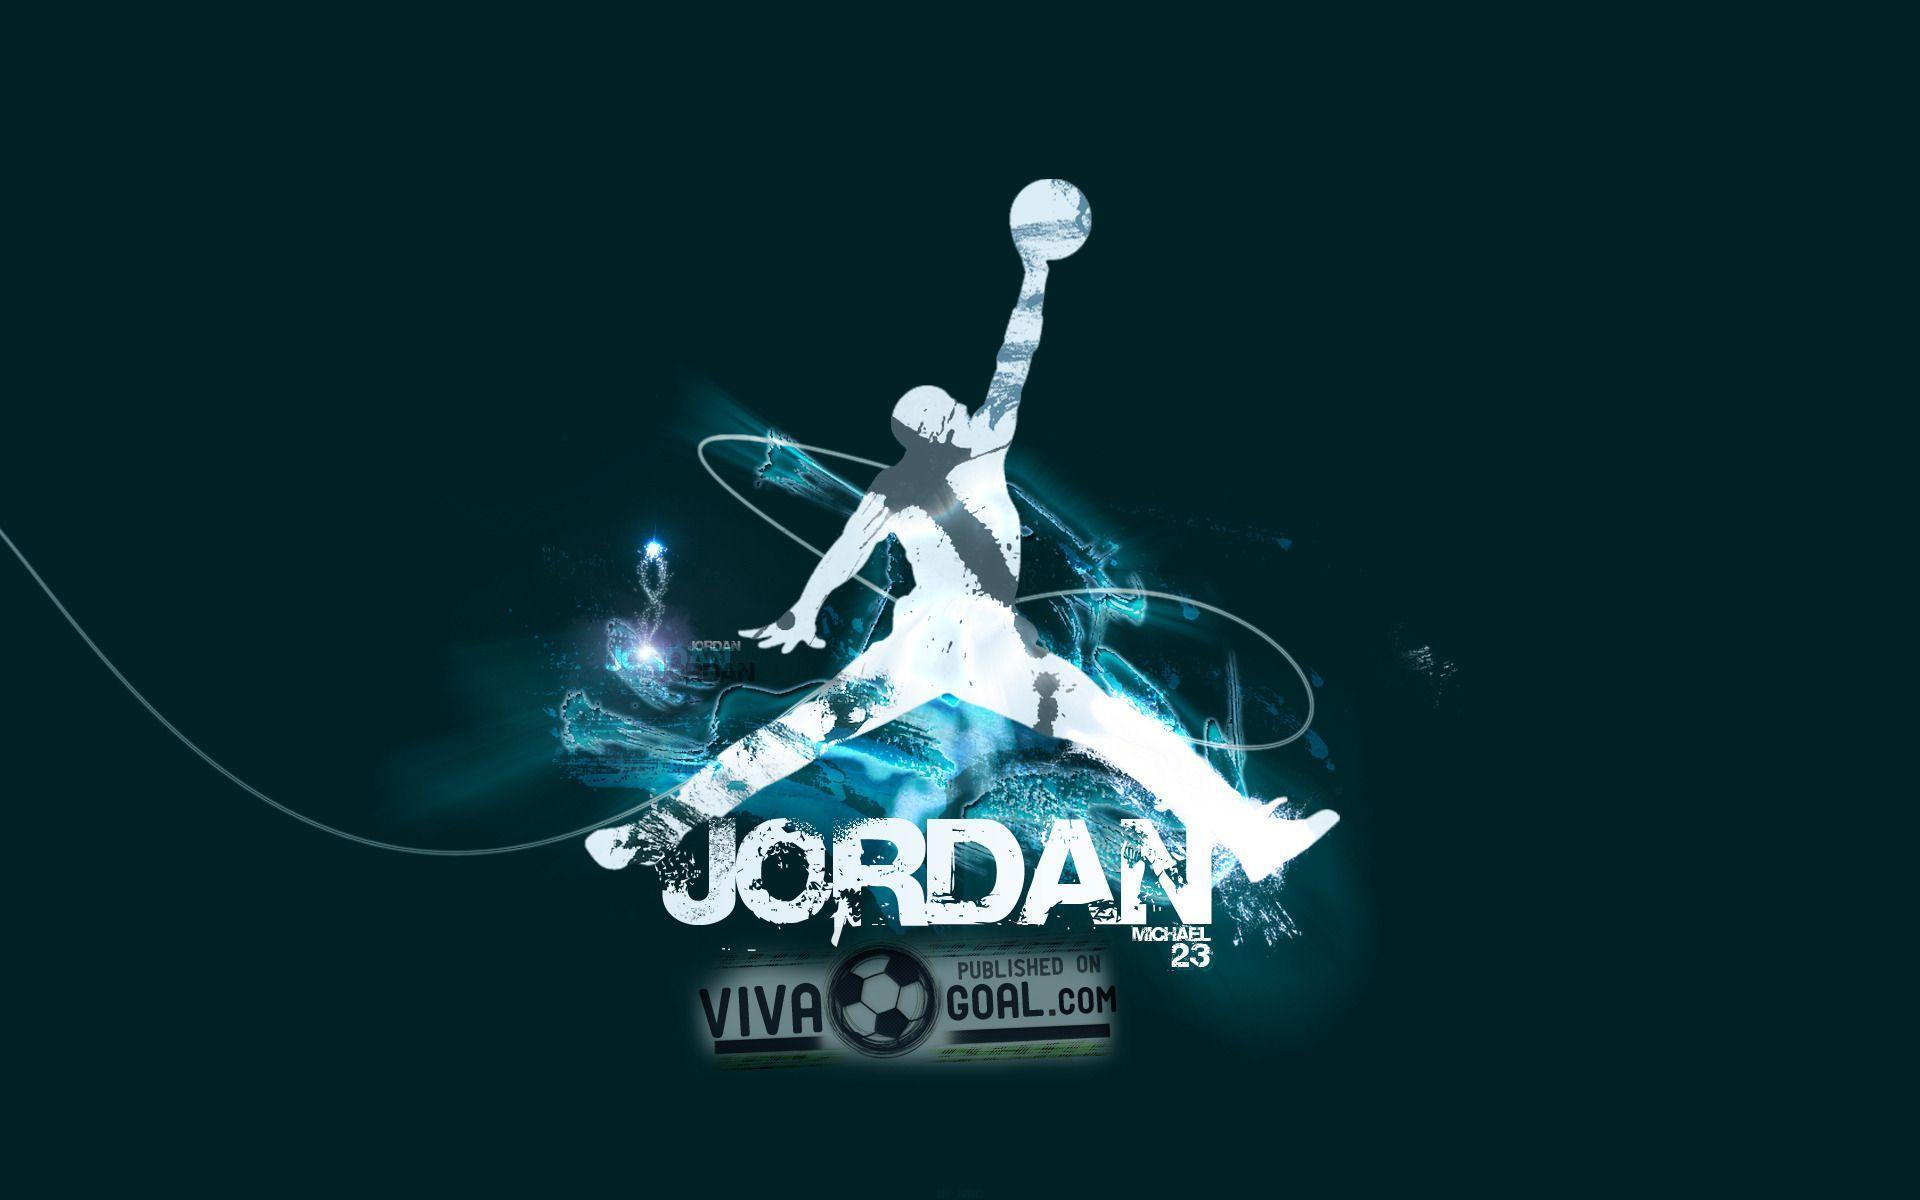 Logos, HD image and Jordans